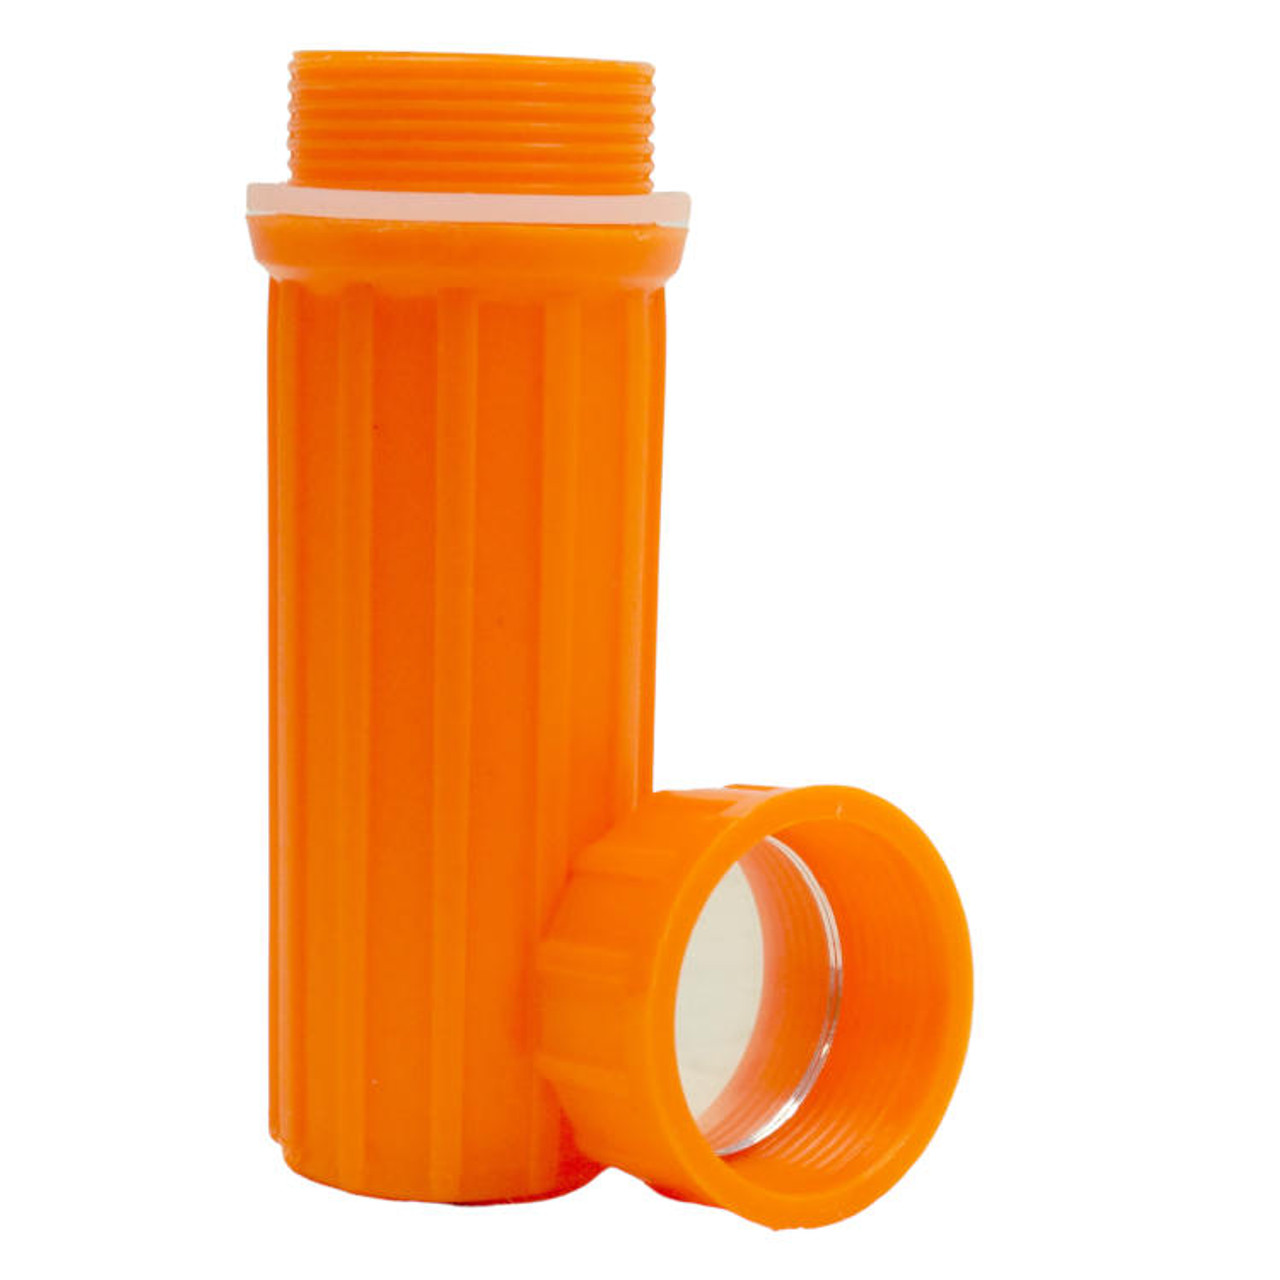 SE CCH6-1 3-in-1 Orange Waterproof Match Storage Box